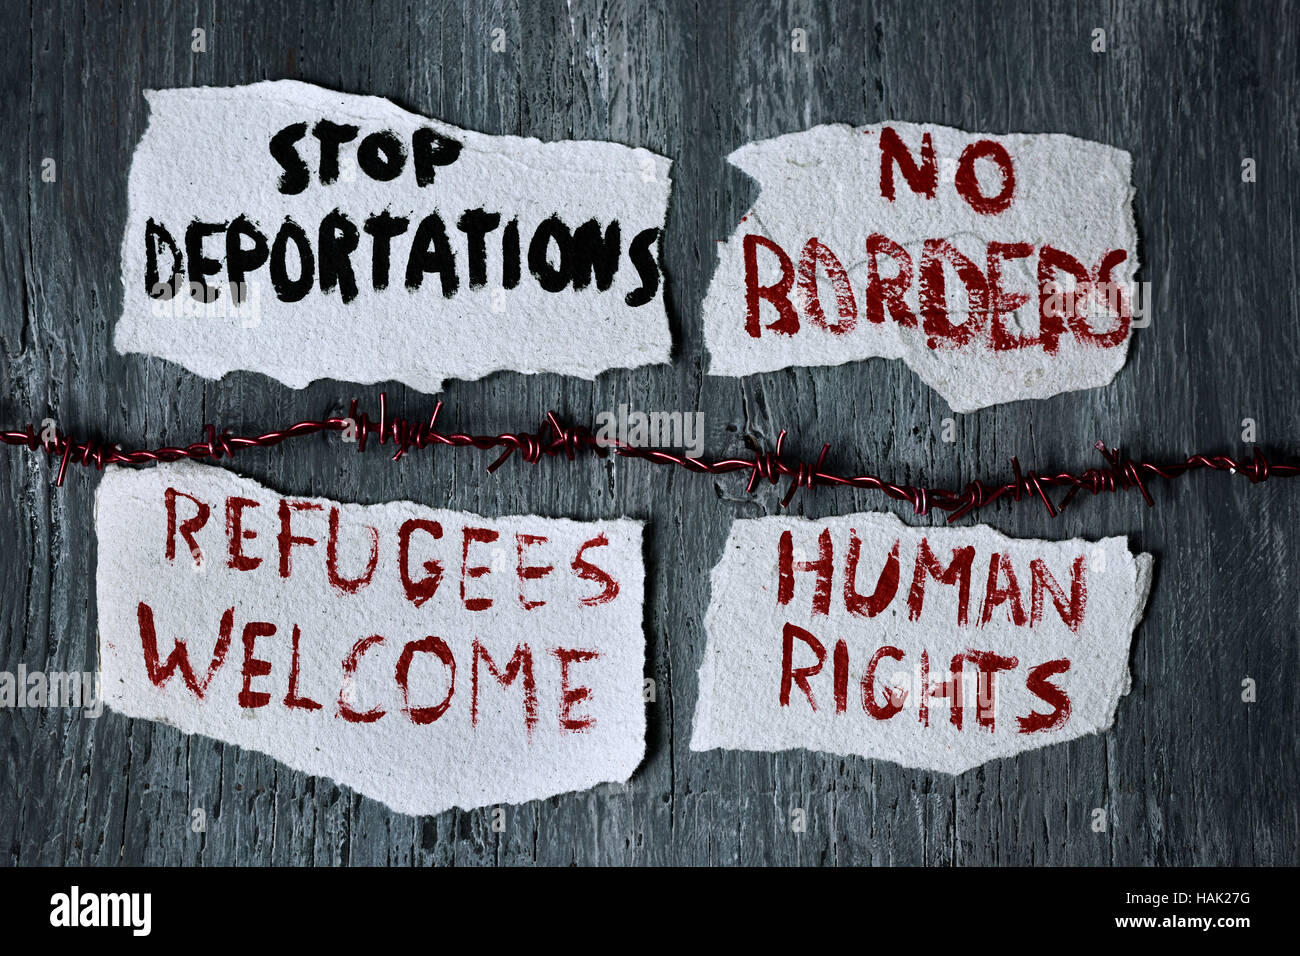 Un grand angle d'un coup de fil de fer barbelé et quelques morceaux de papier avec des messages différents, comme arrêter les expulsions, pas de frontières, des réfugiés et des droits de l'bienvenue r Banque D'Images